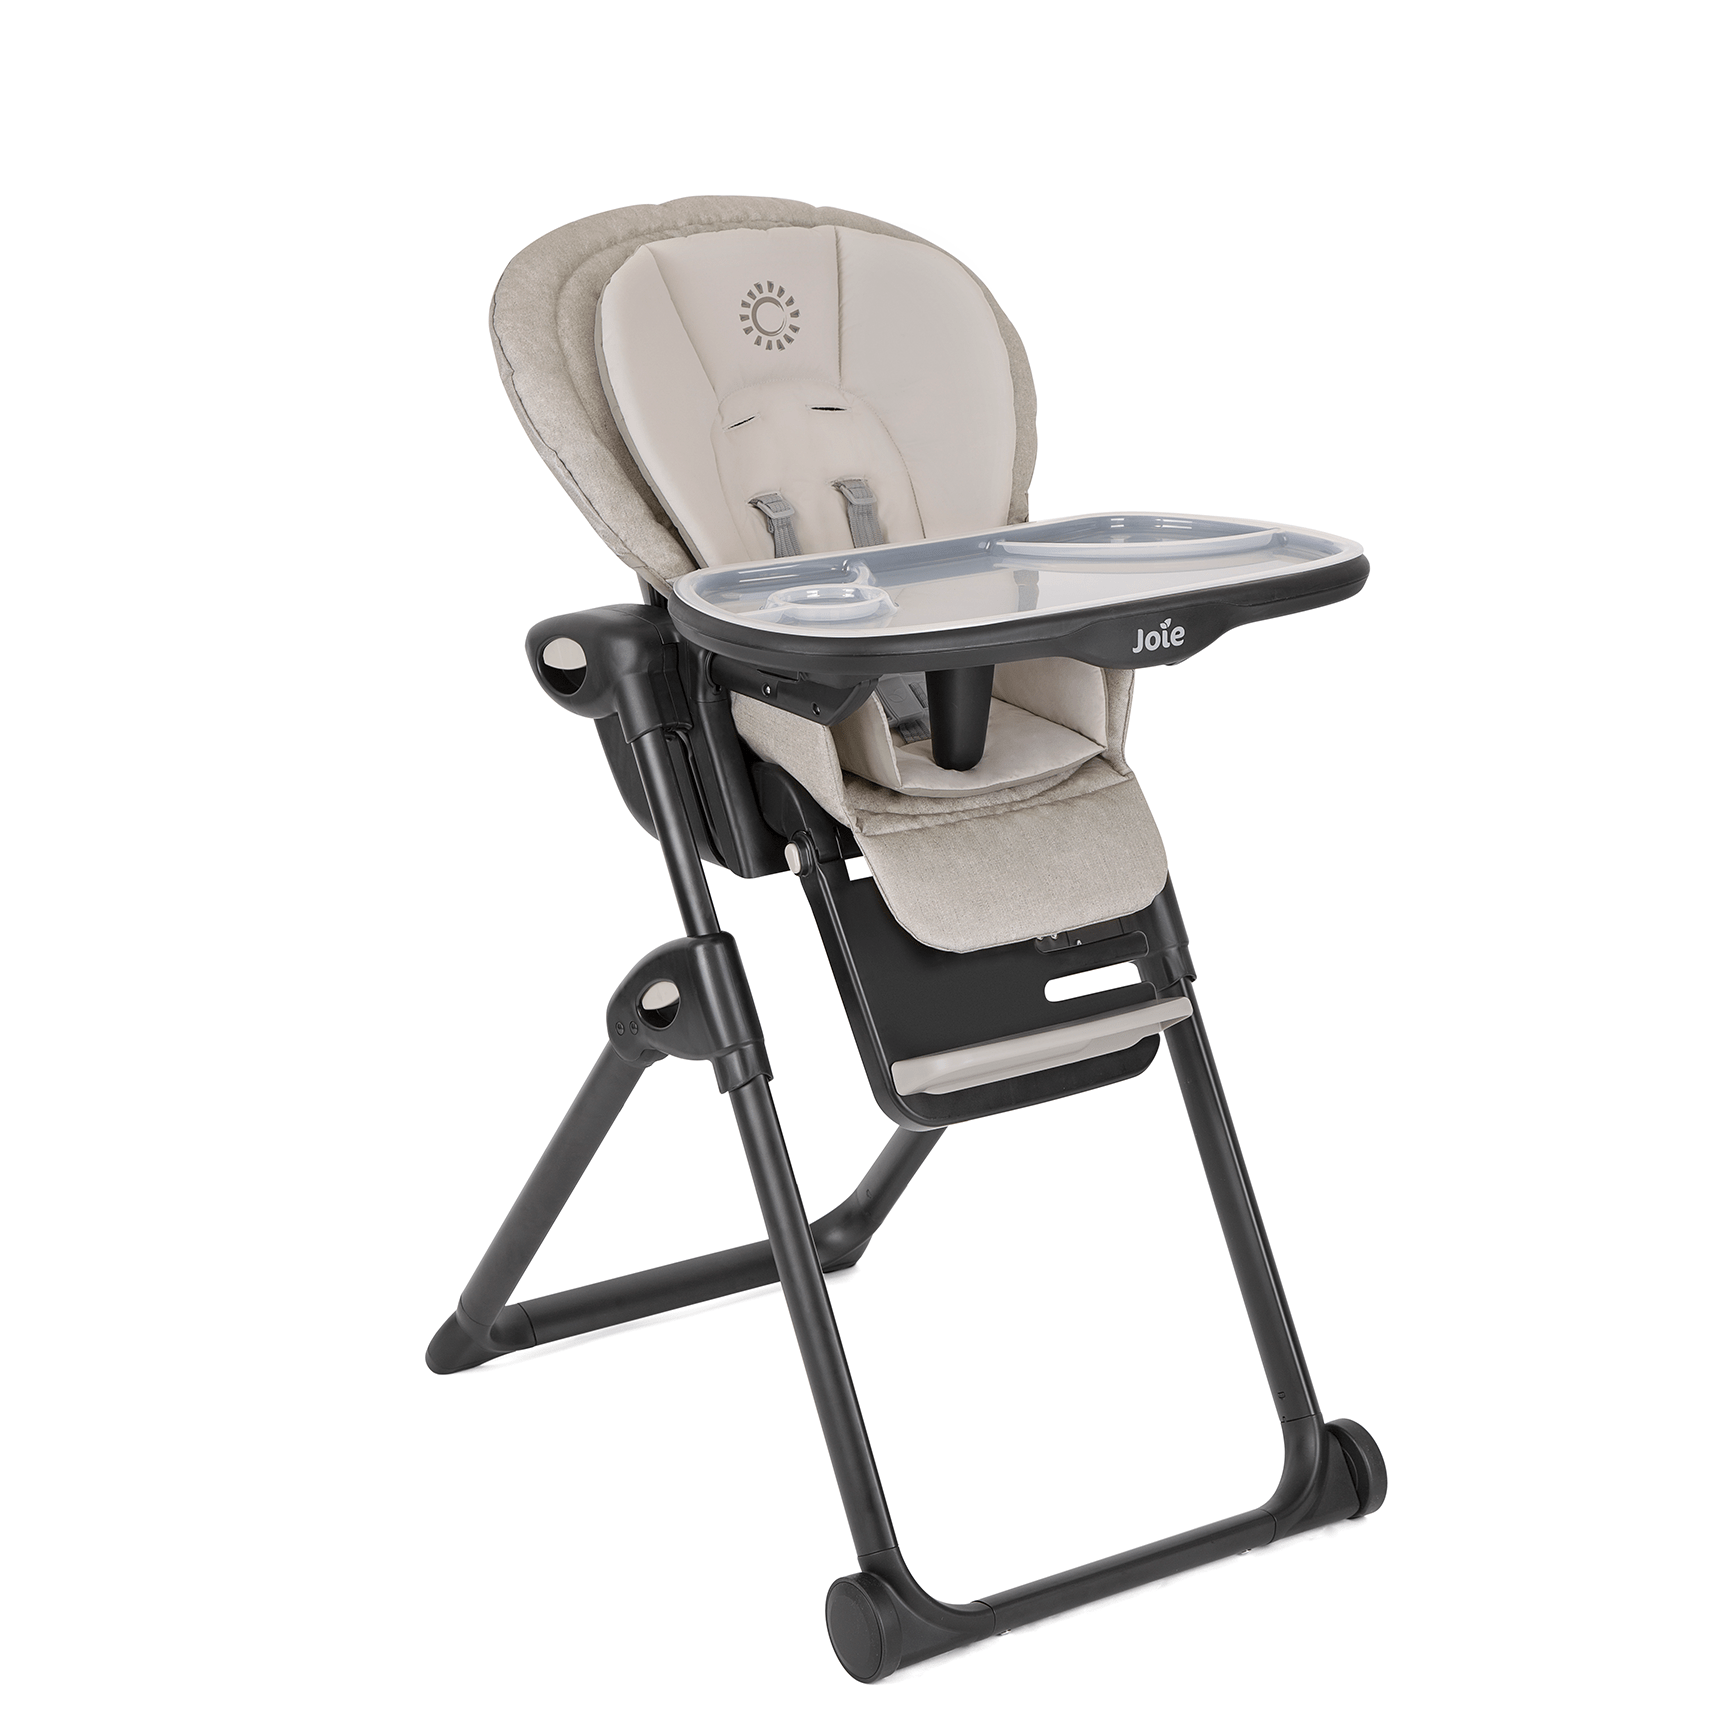 Joie Mimzy Recline Highchair in Speckled Baby Highchairs H1013DASPK000 5056080615028